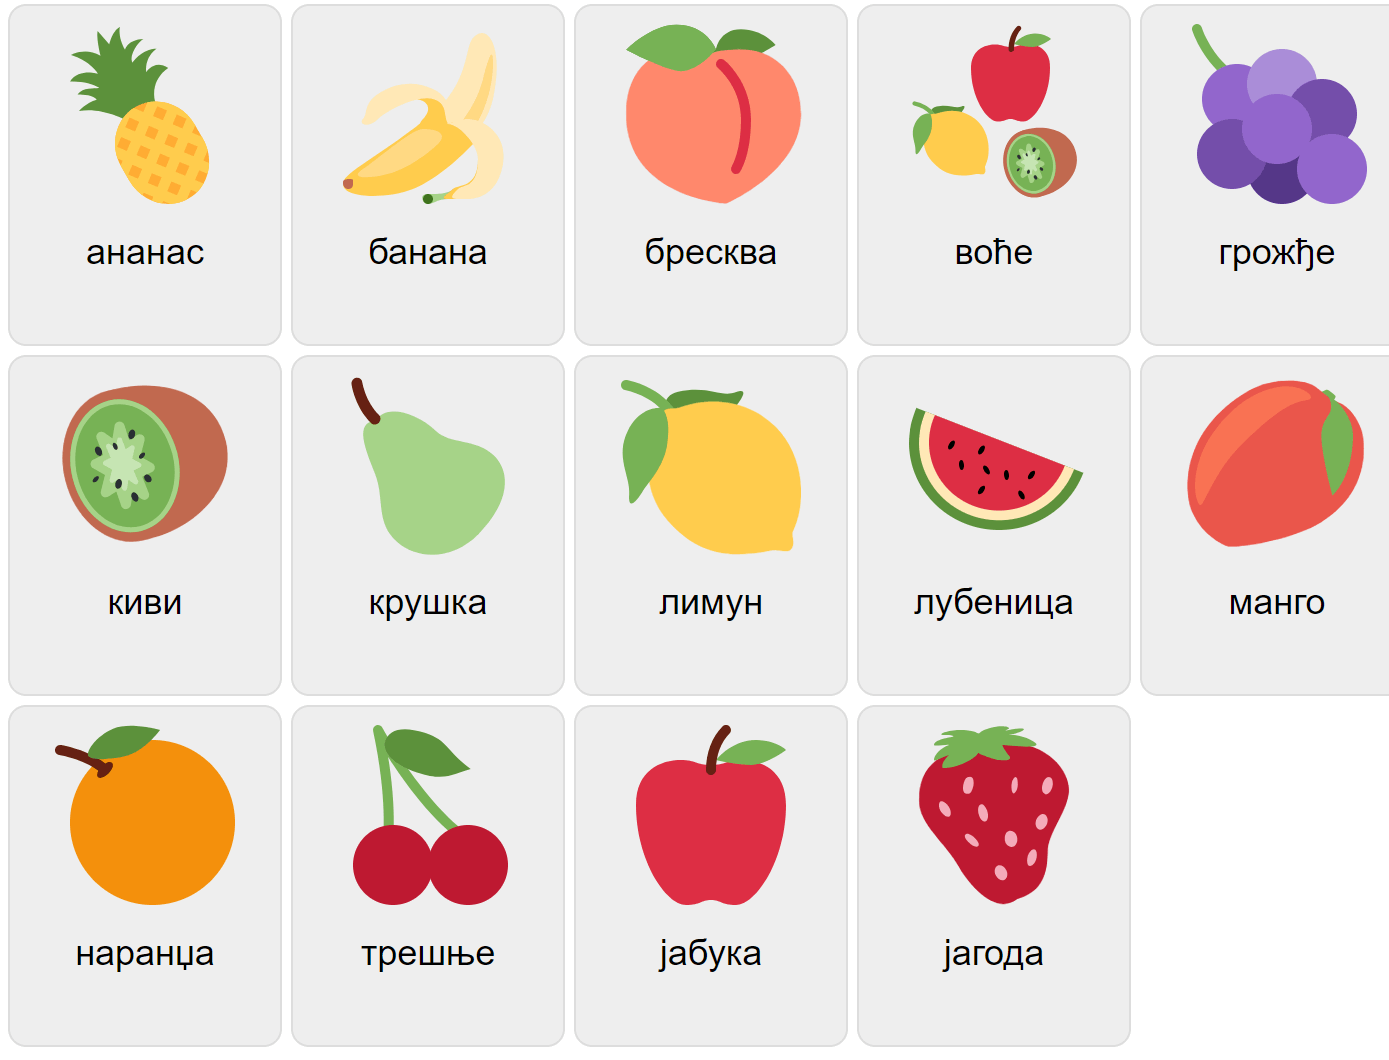 Frukter på serbiska